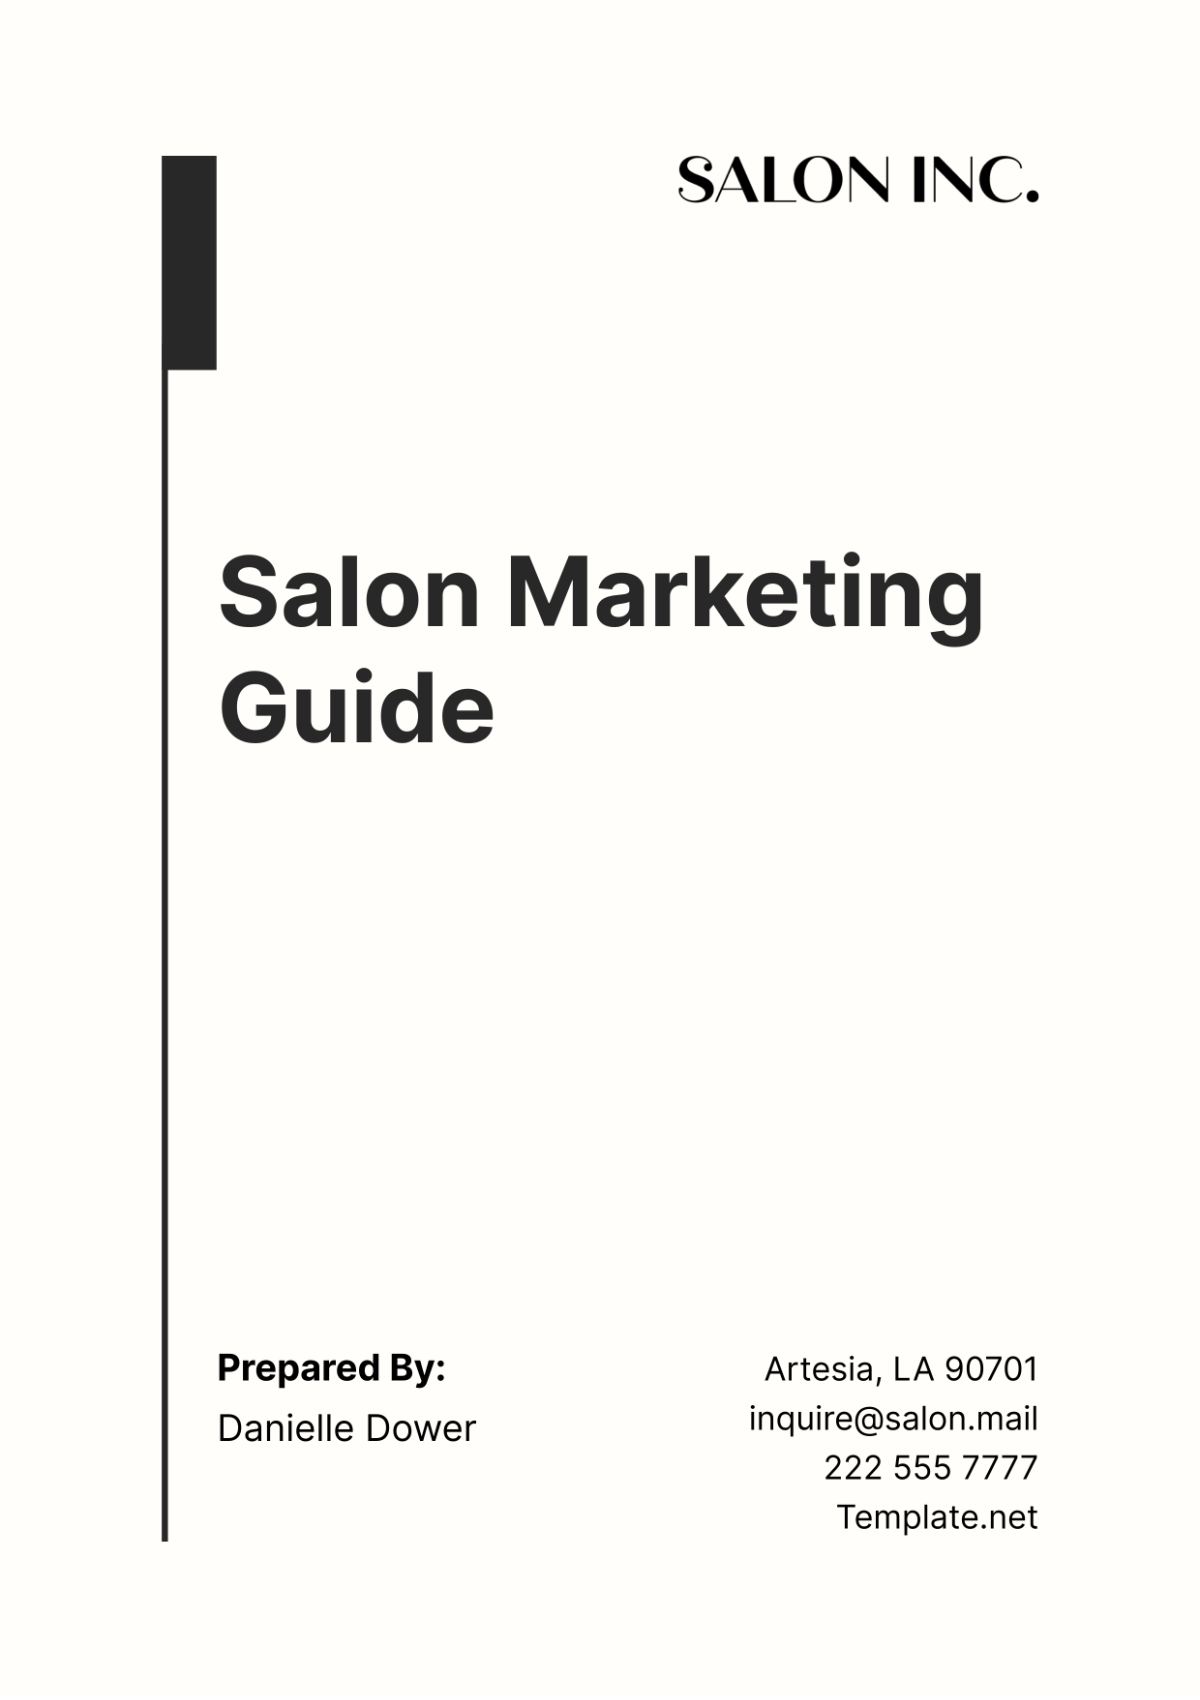 Salon Marketing Guide Template